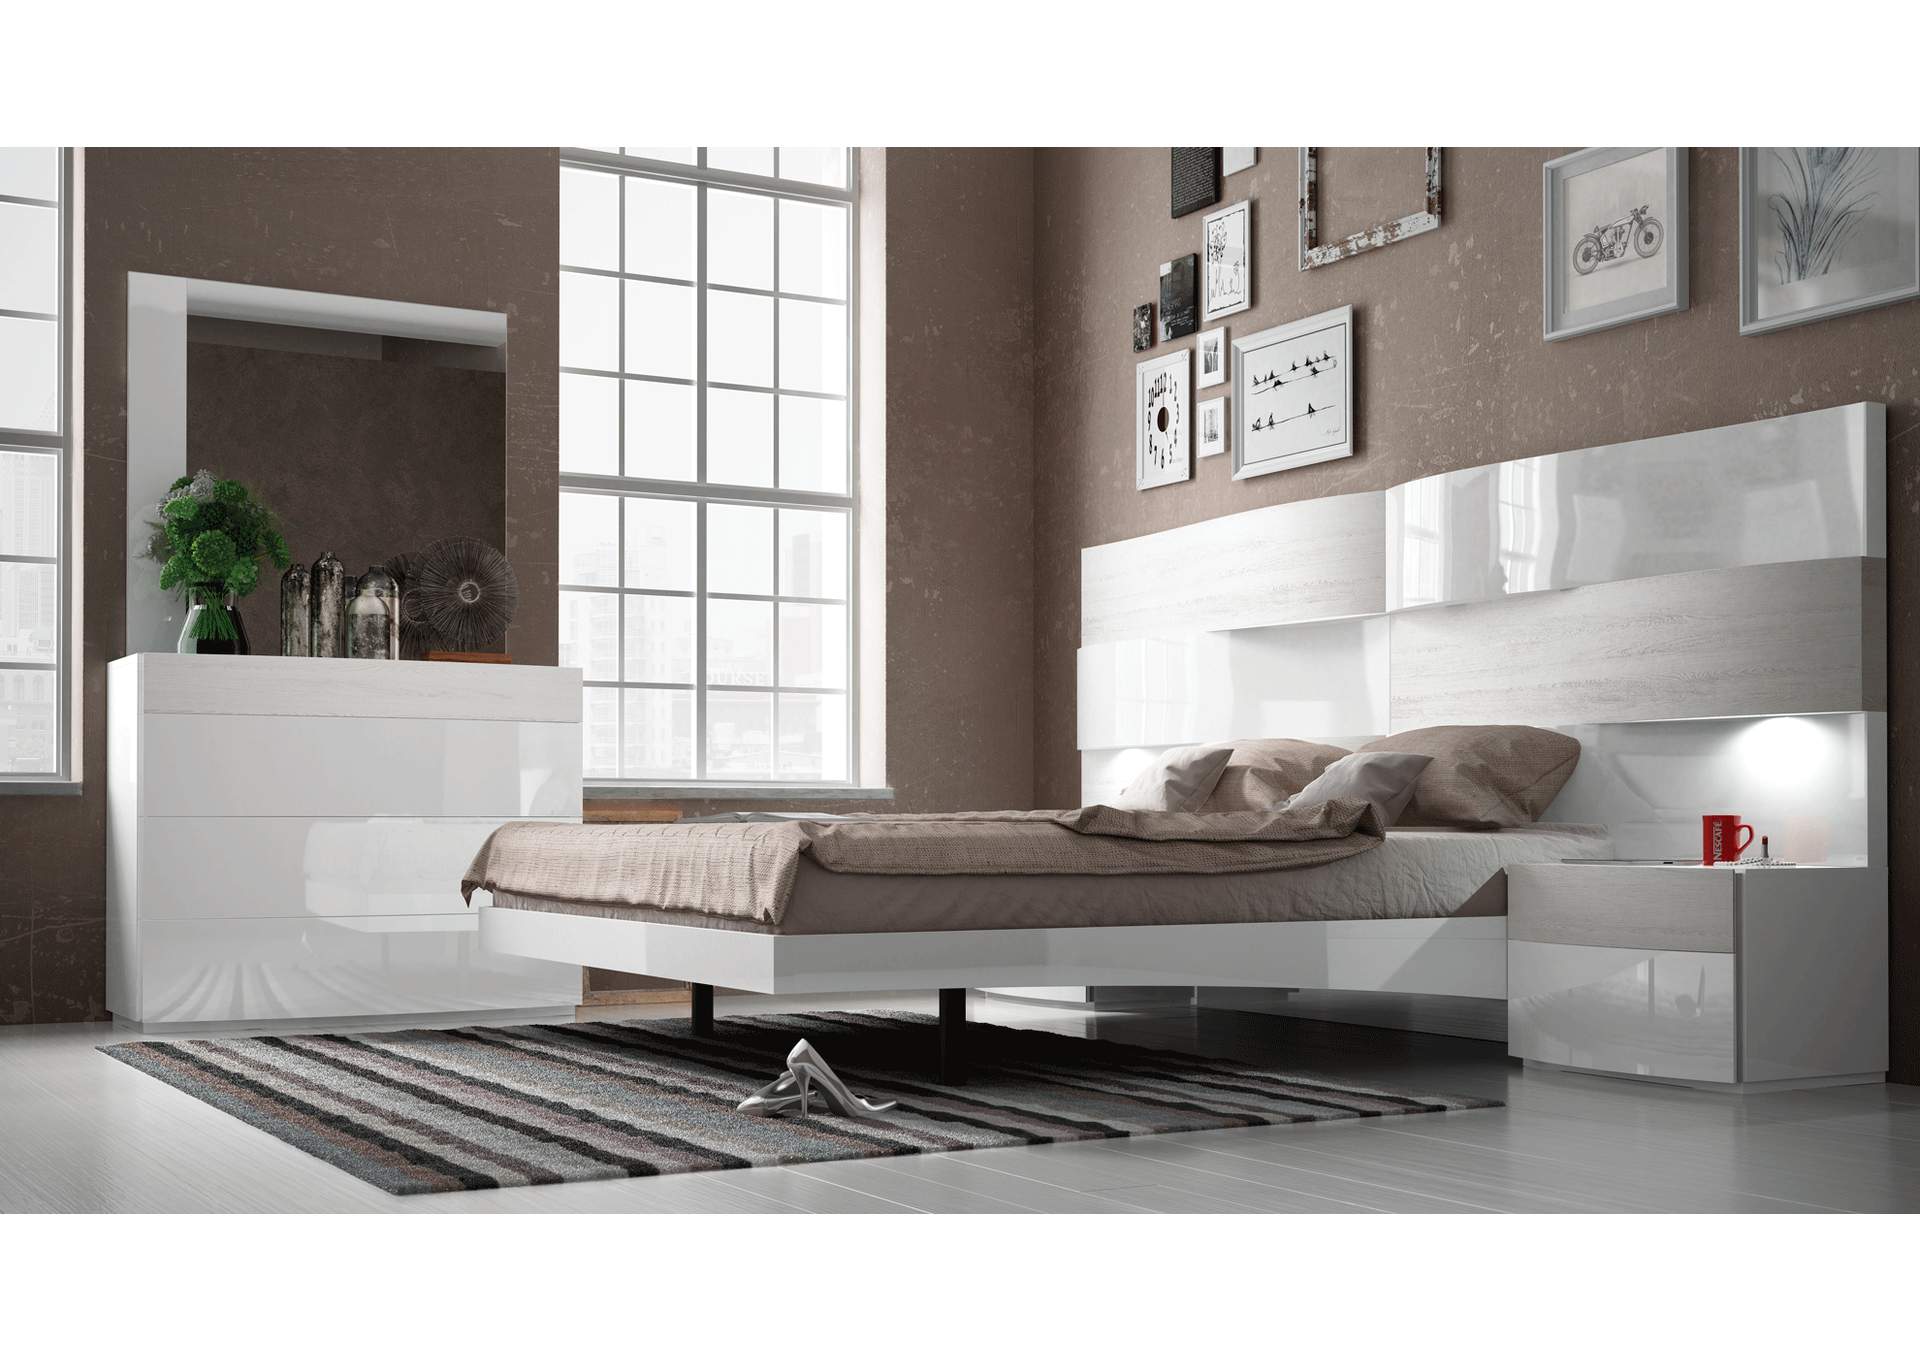 Cordoba Beige & White Queen Storage Bed W/ Dresser & Mirror,ESF Wholesale Furniture